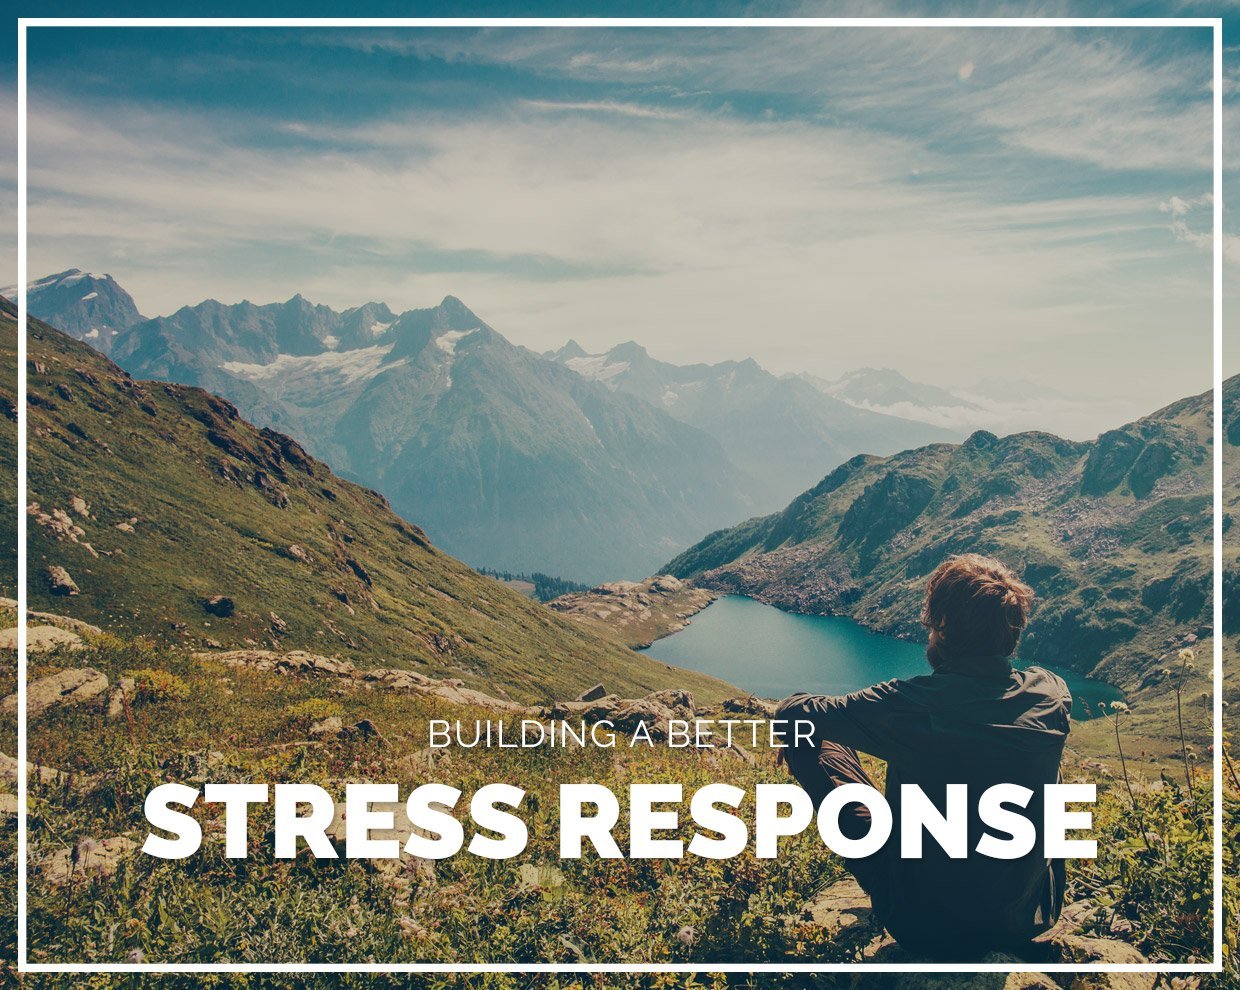 Building a better stress response